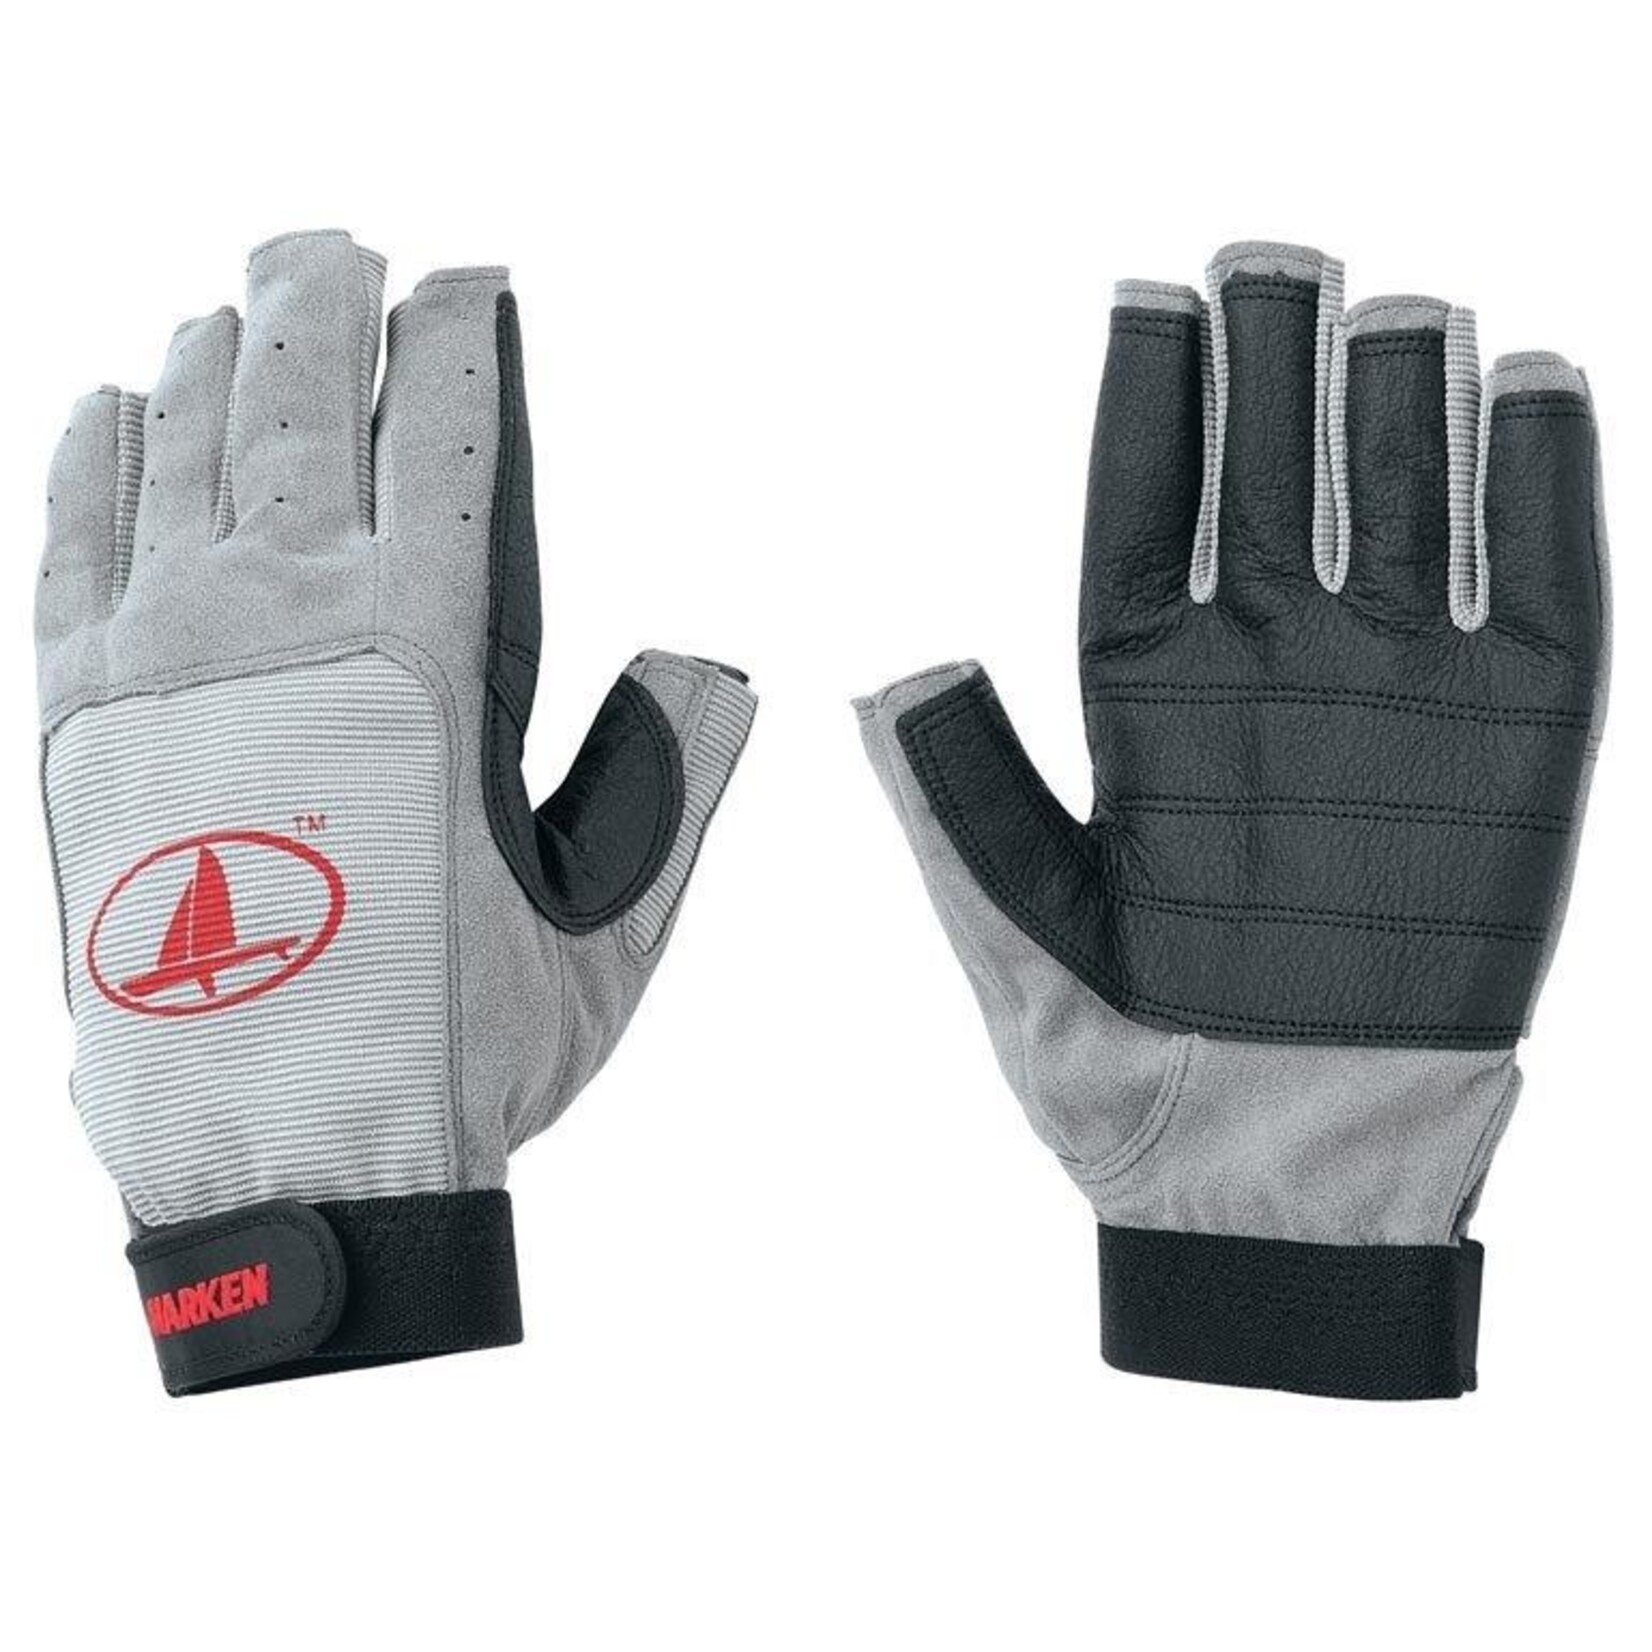 Harken 3/4 Fingers glove  XL